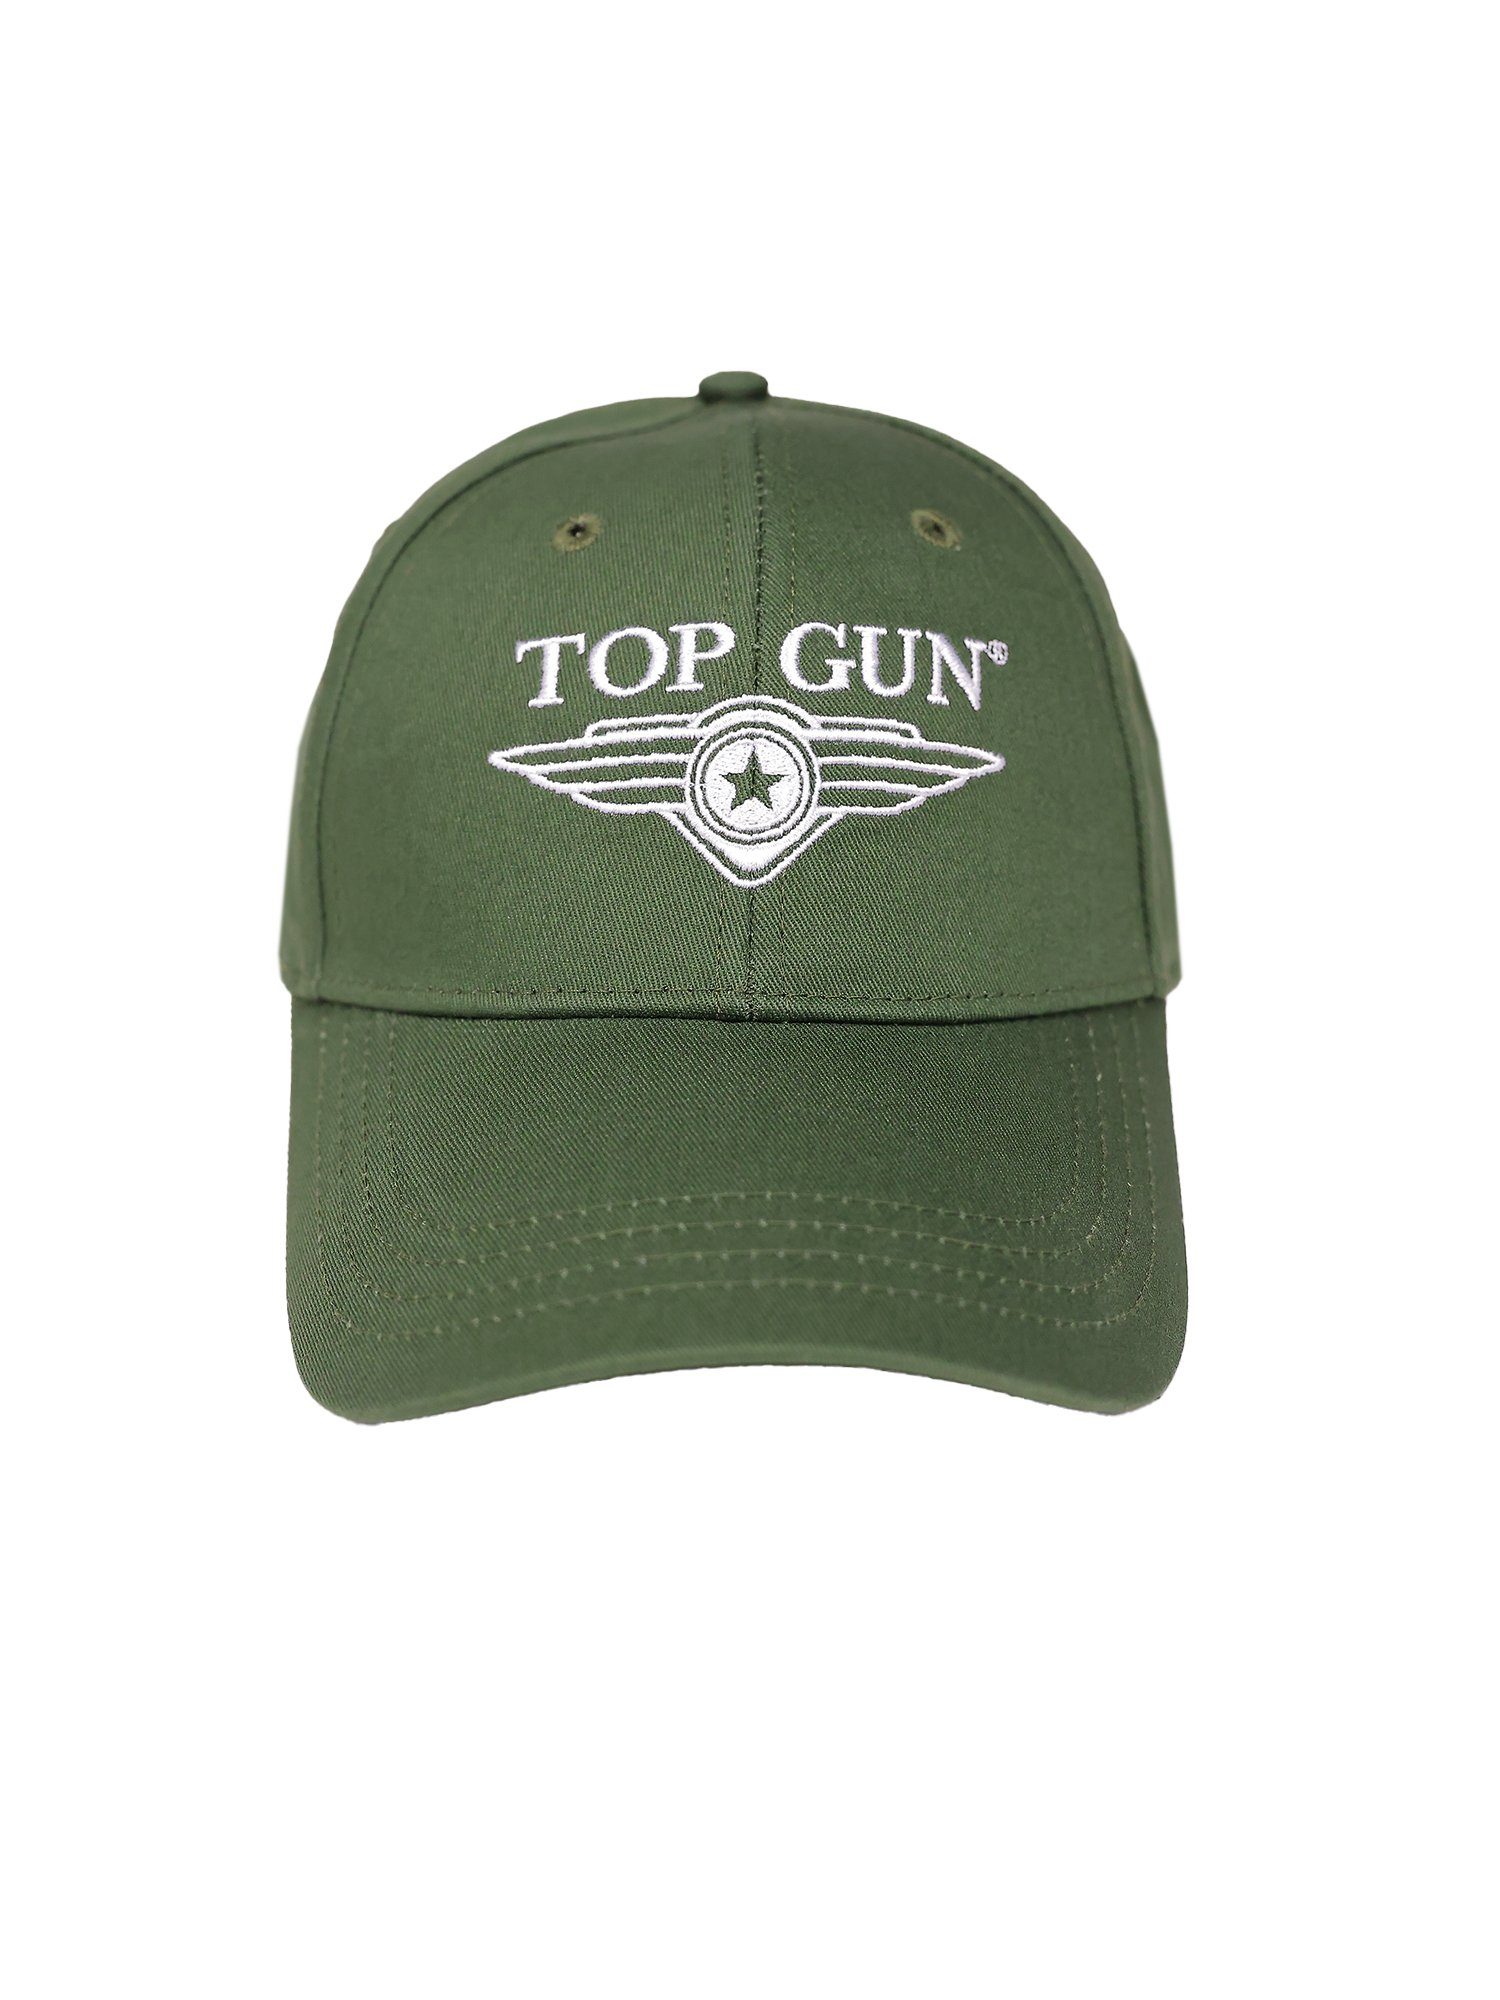 TOP GUN Snapback Cap olive TG22013